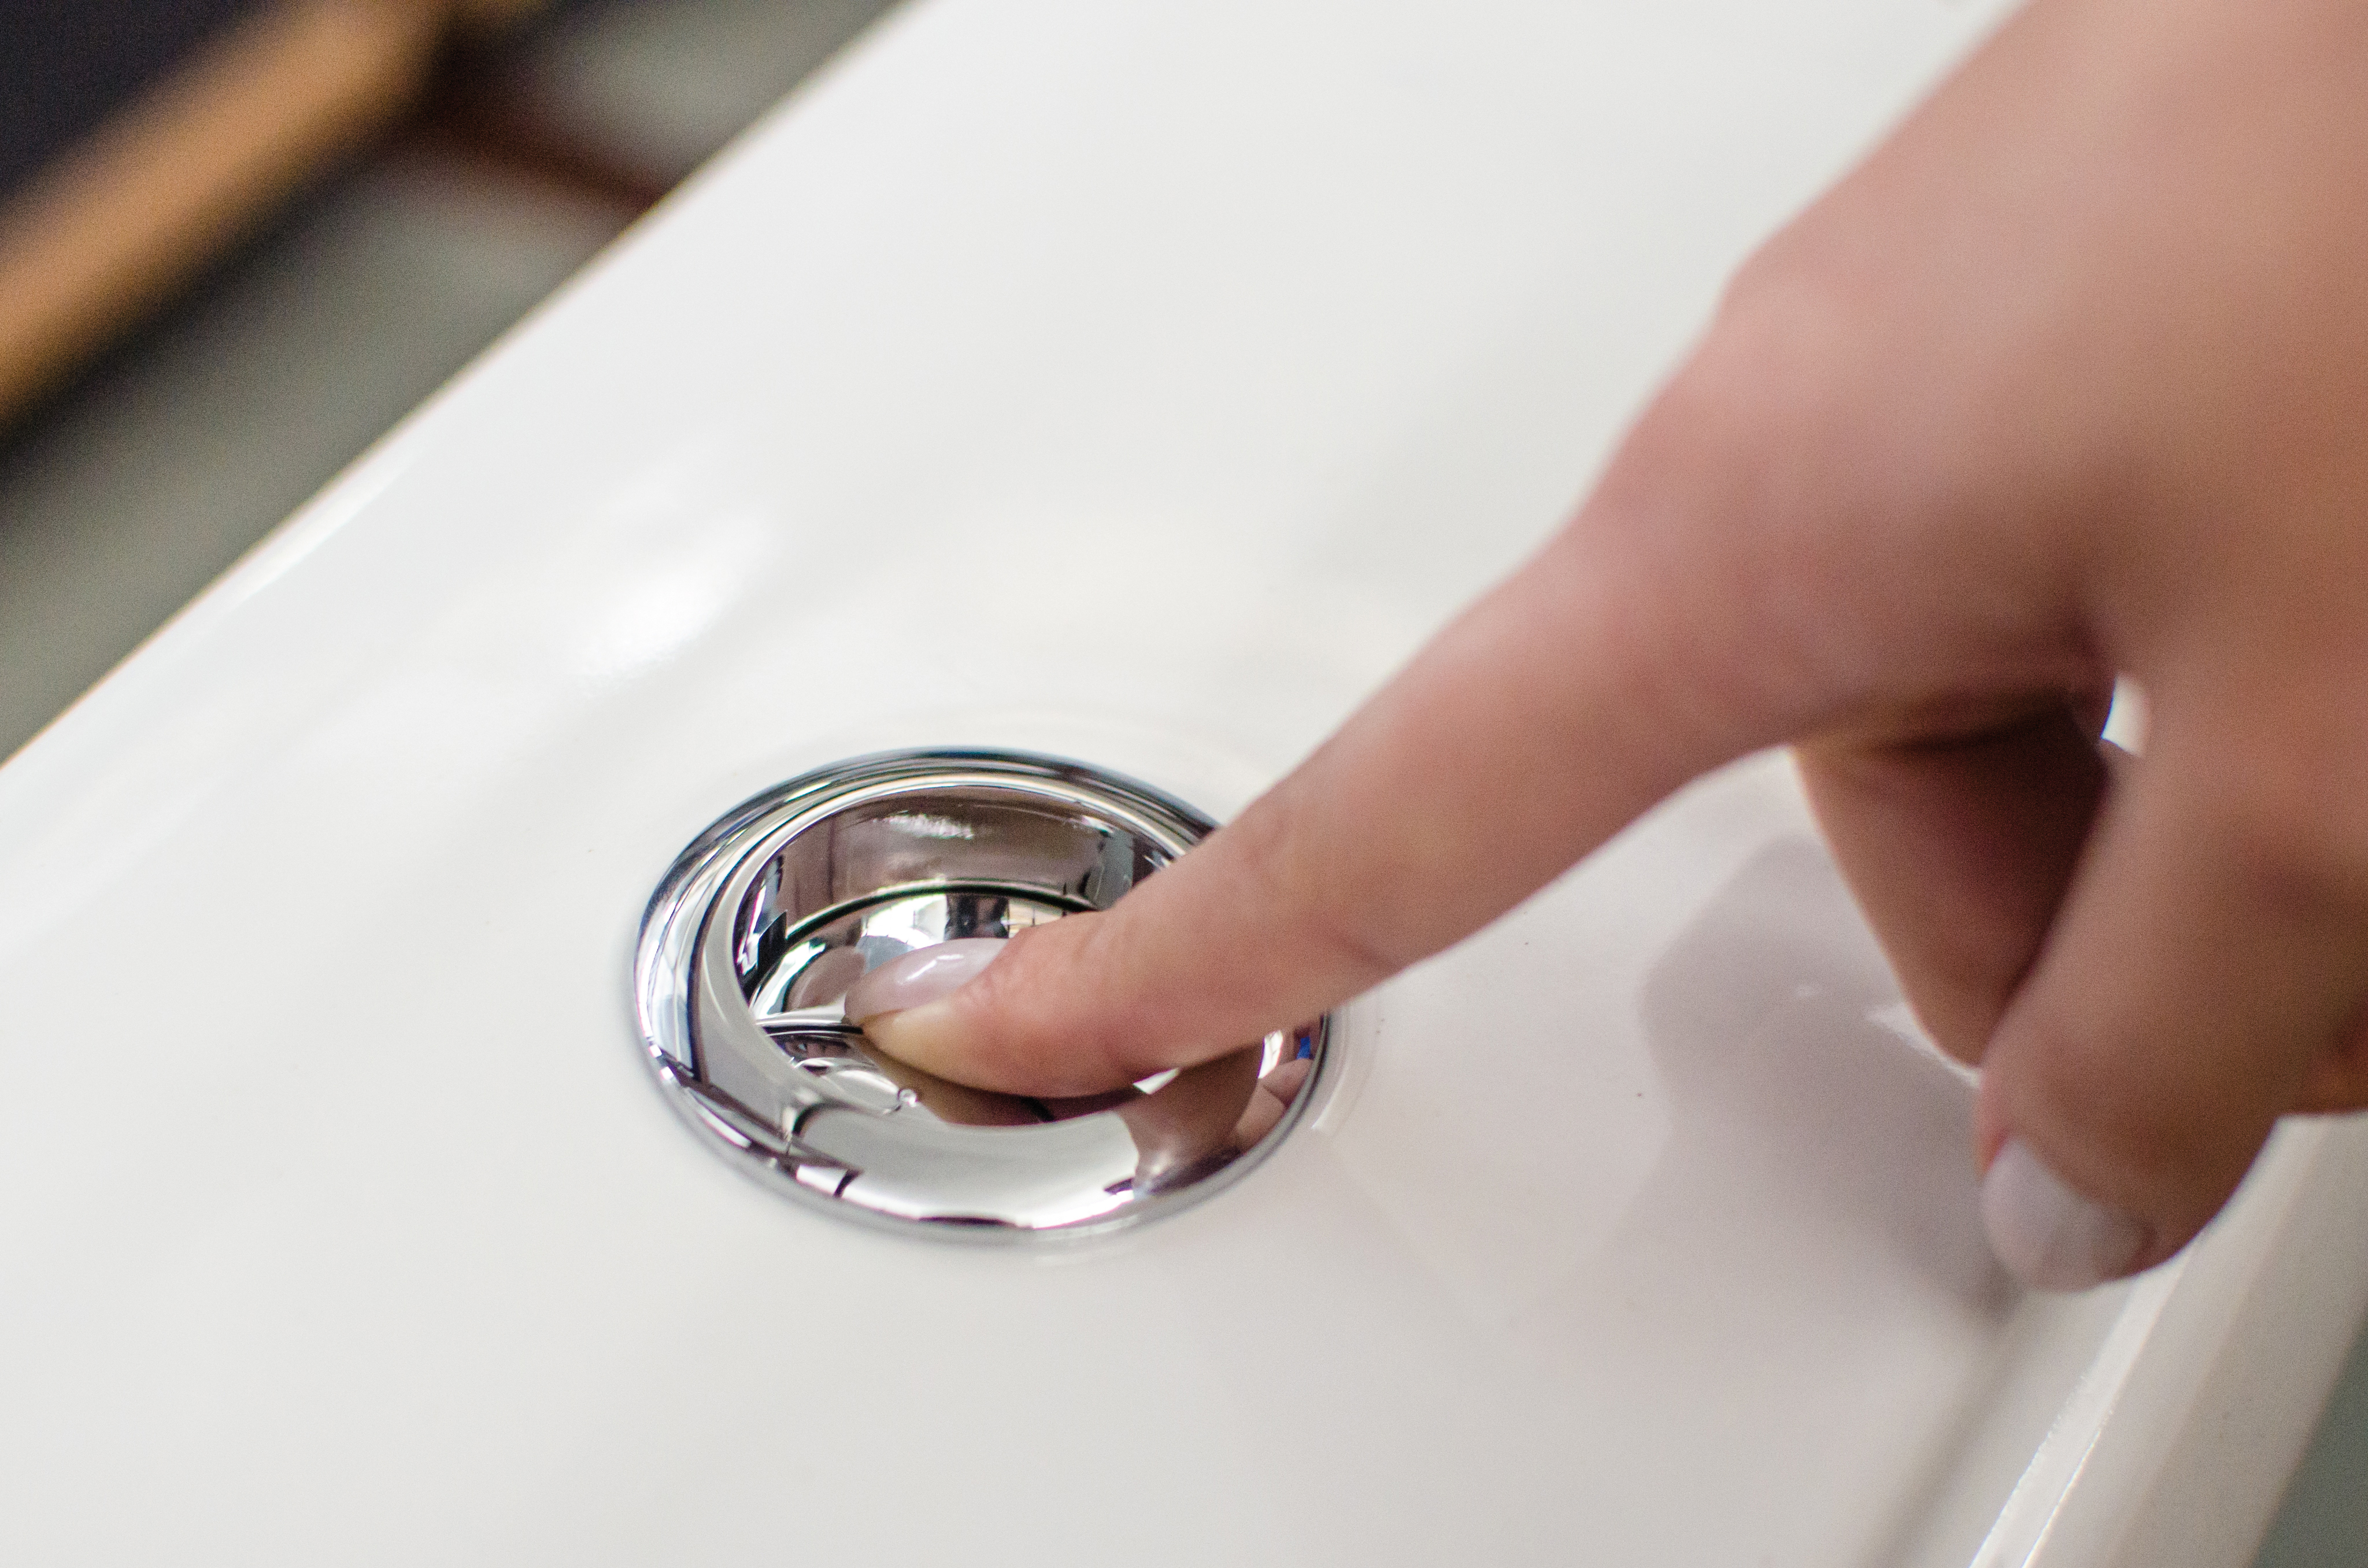 A imagem mostra o dedo de uma pessoa pressionando um botão prateado de descarga acoplada.